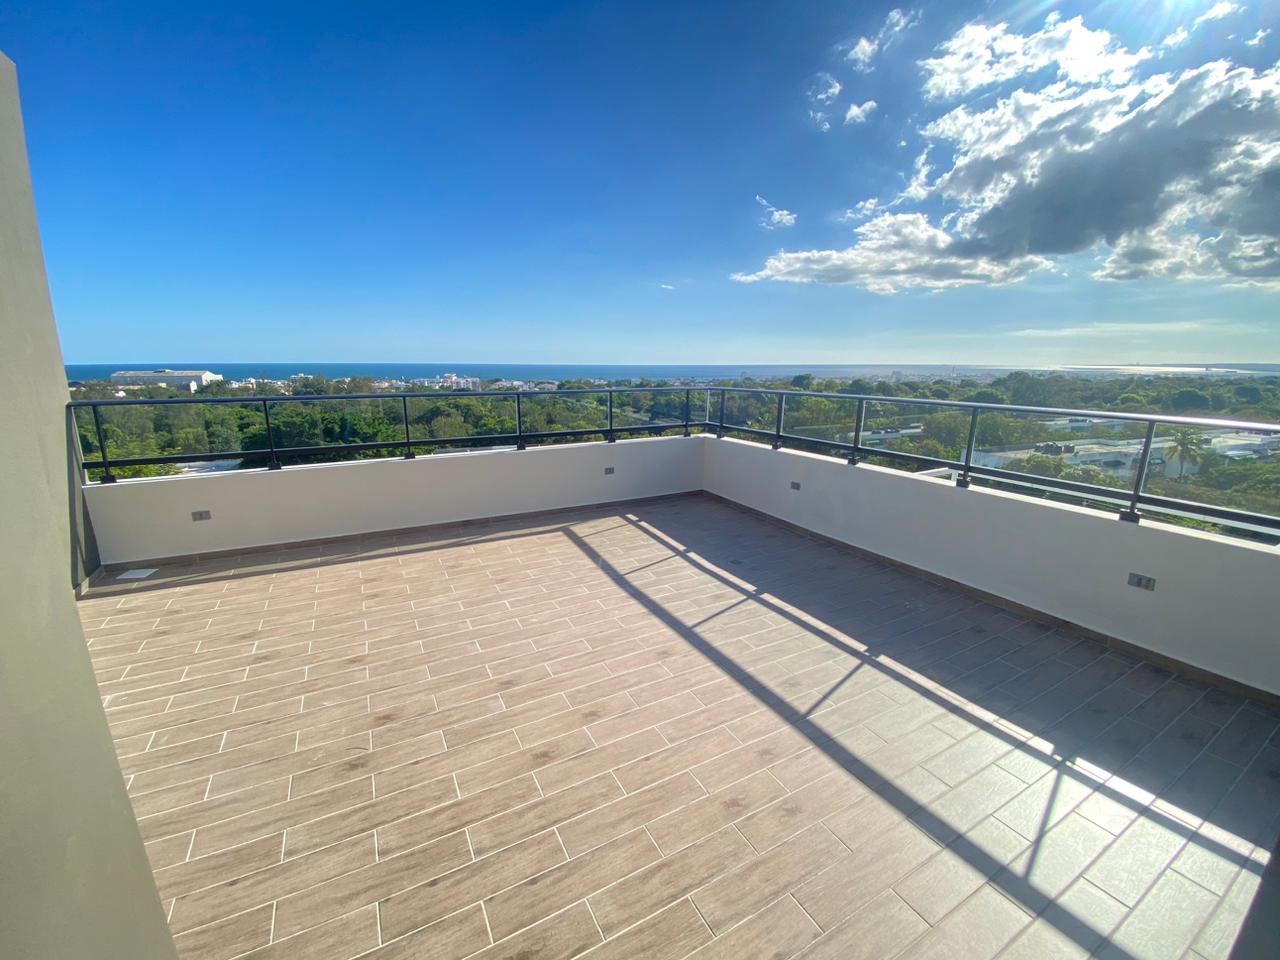 penthouses - Vendo Ph nuevo mirador sur tres hab con su baño tres parqueos terraza piso 7y8 7